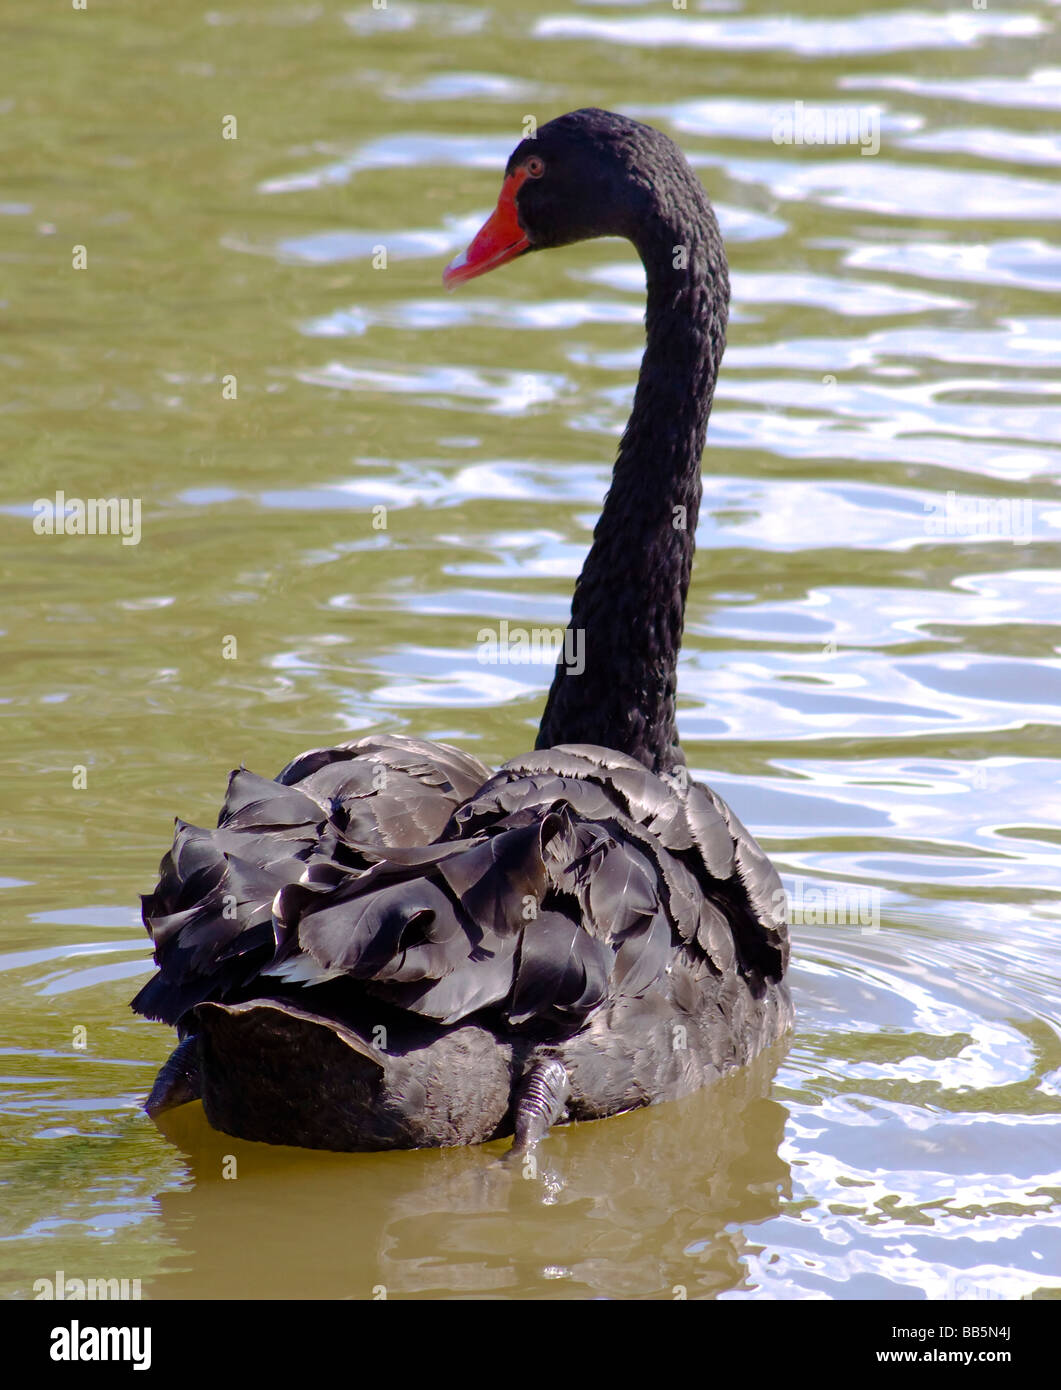 Black Swan la natation de l'appareil photo Banque D'Images